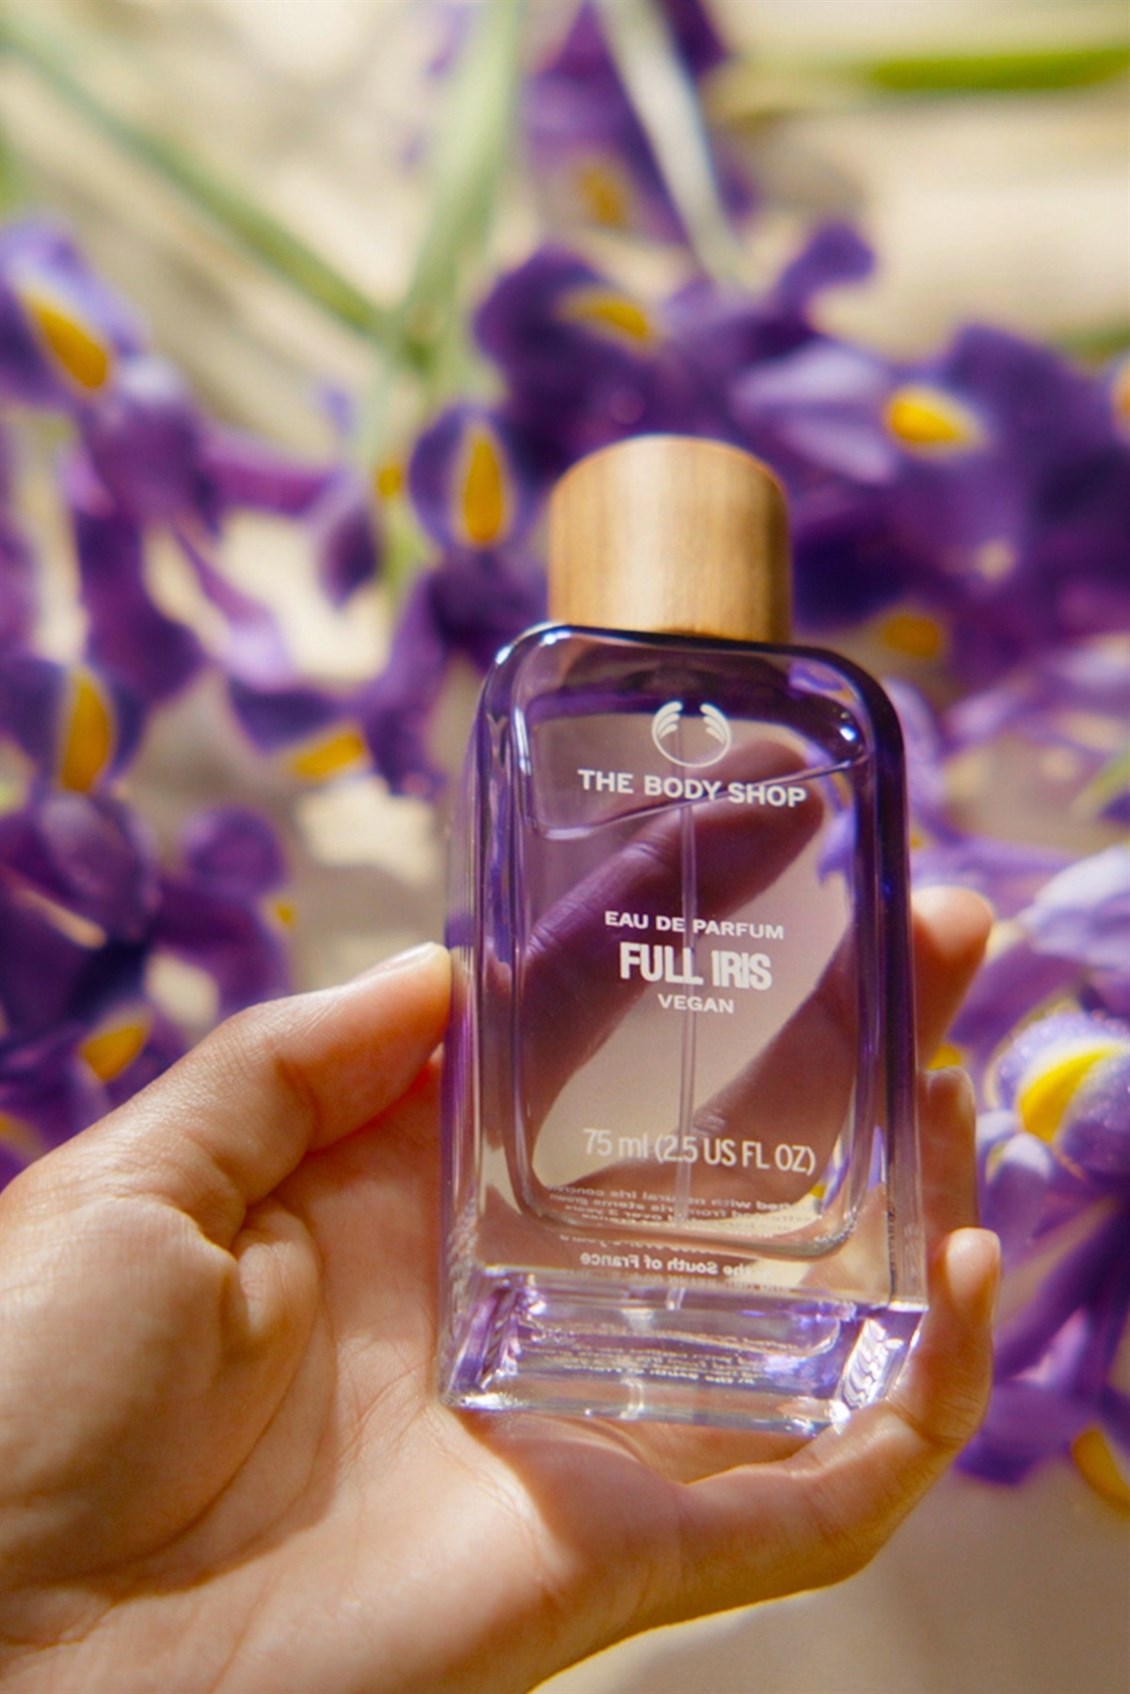 Full Iris Eau De Parfüm |The Body Shop